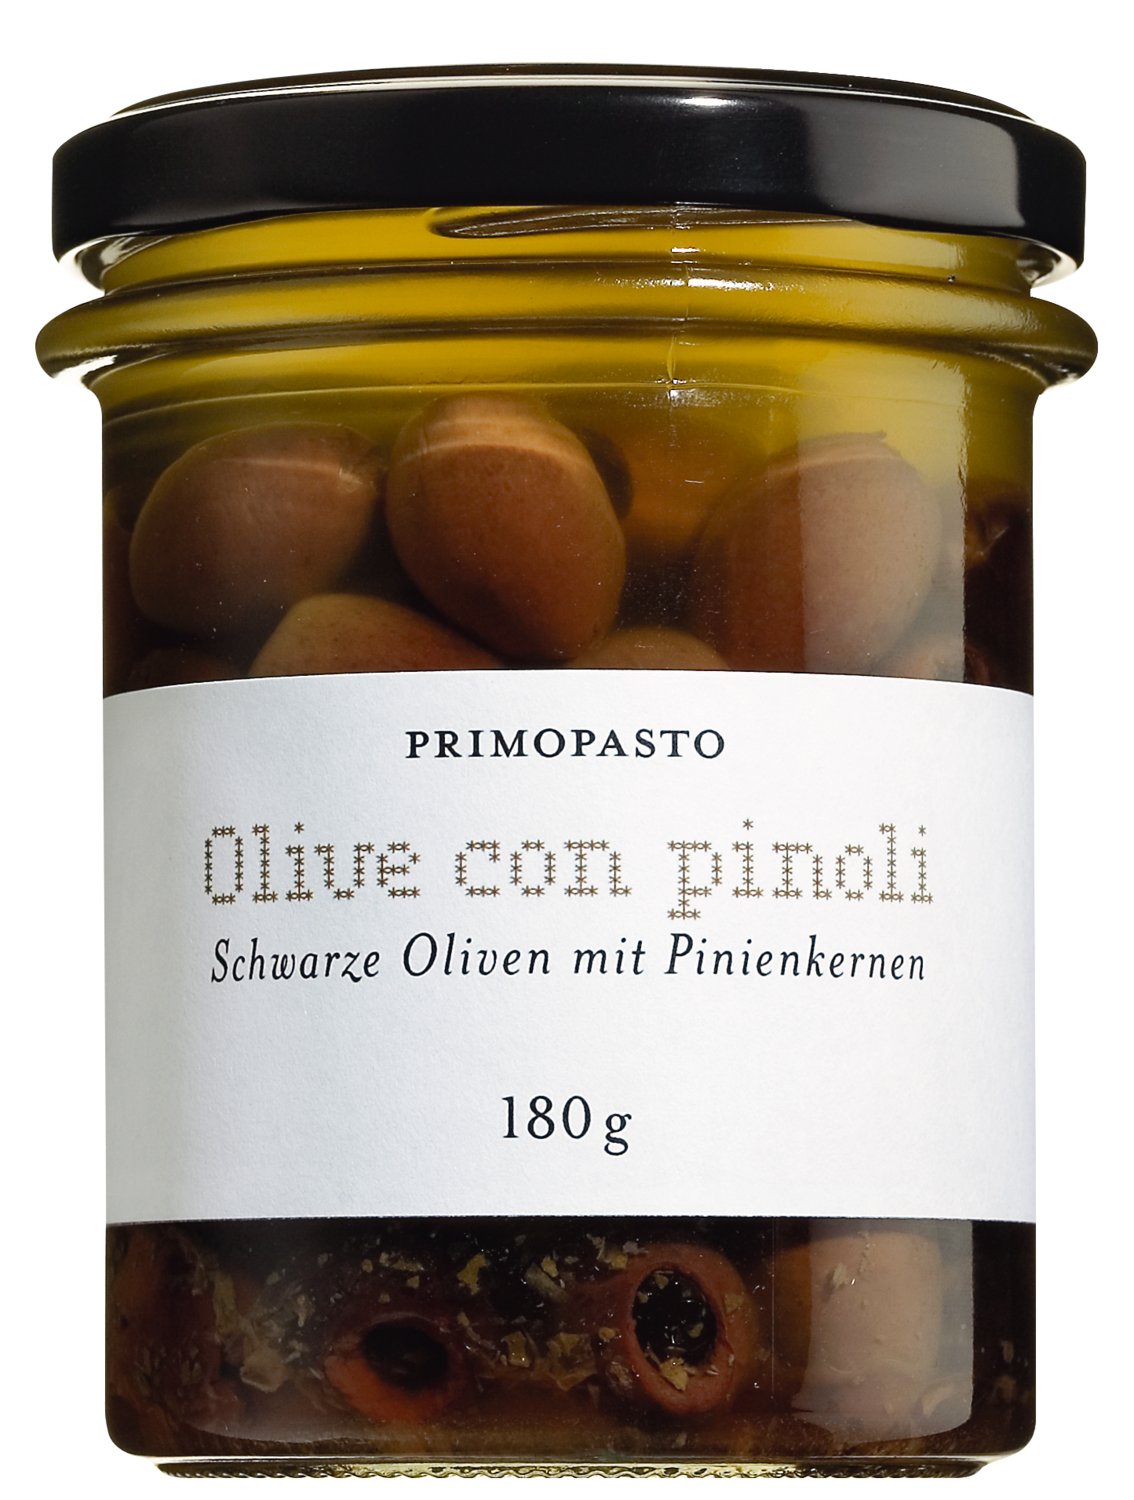 Primopasto Olive nere con pinoli - schwarze Oliven mit Pinienkernen